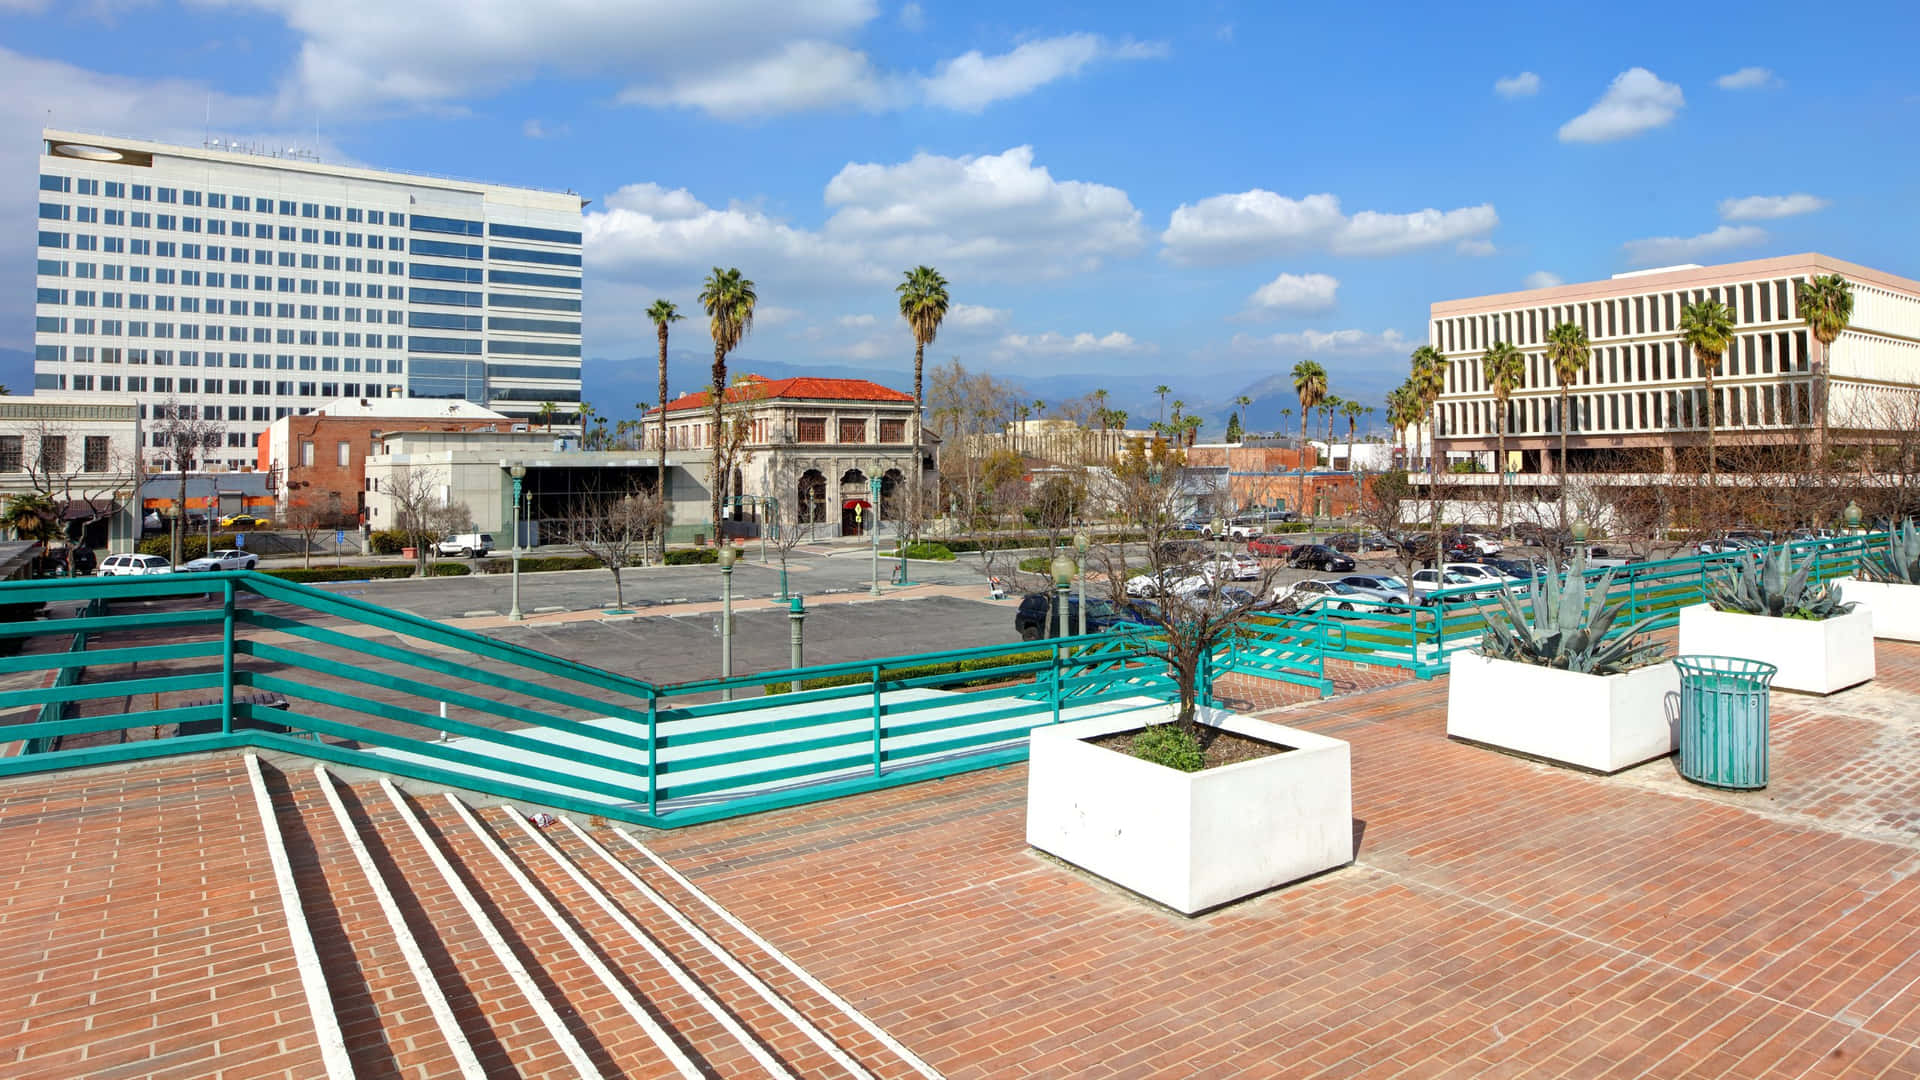 San Bernardino Cityscapeand Architecture Wallpaper